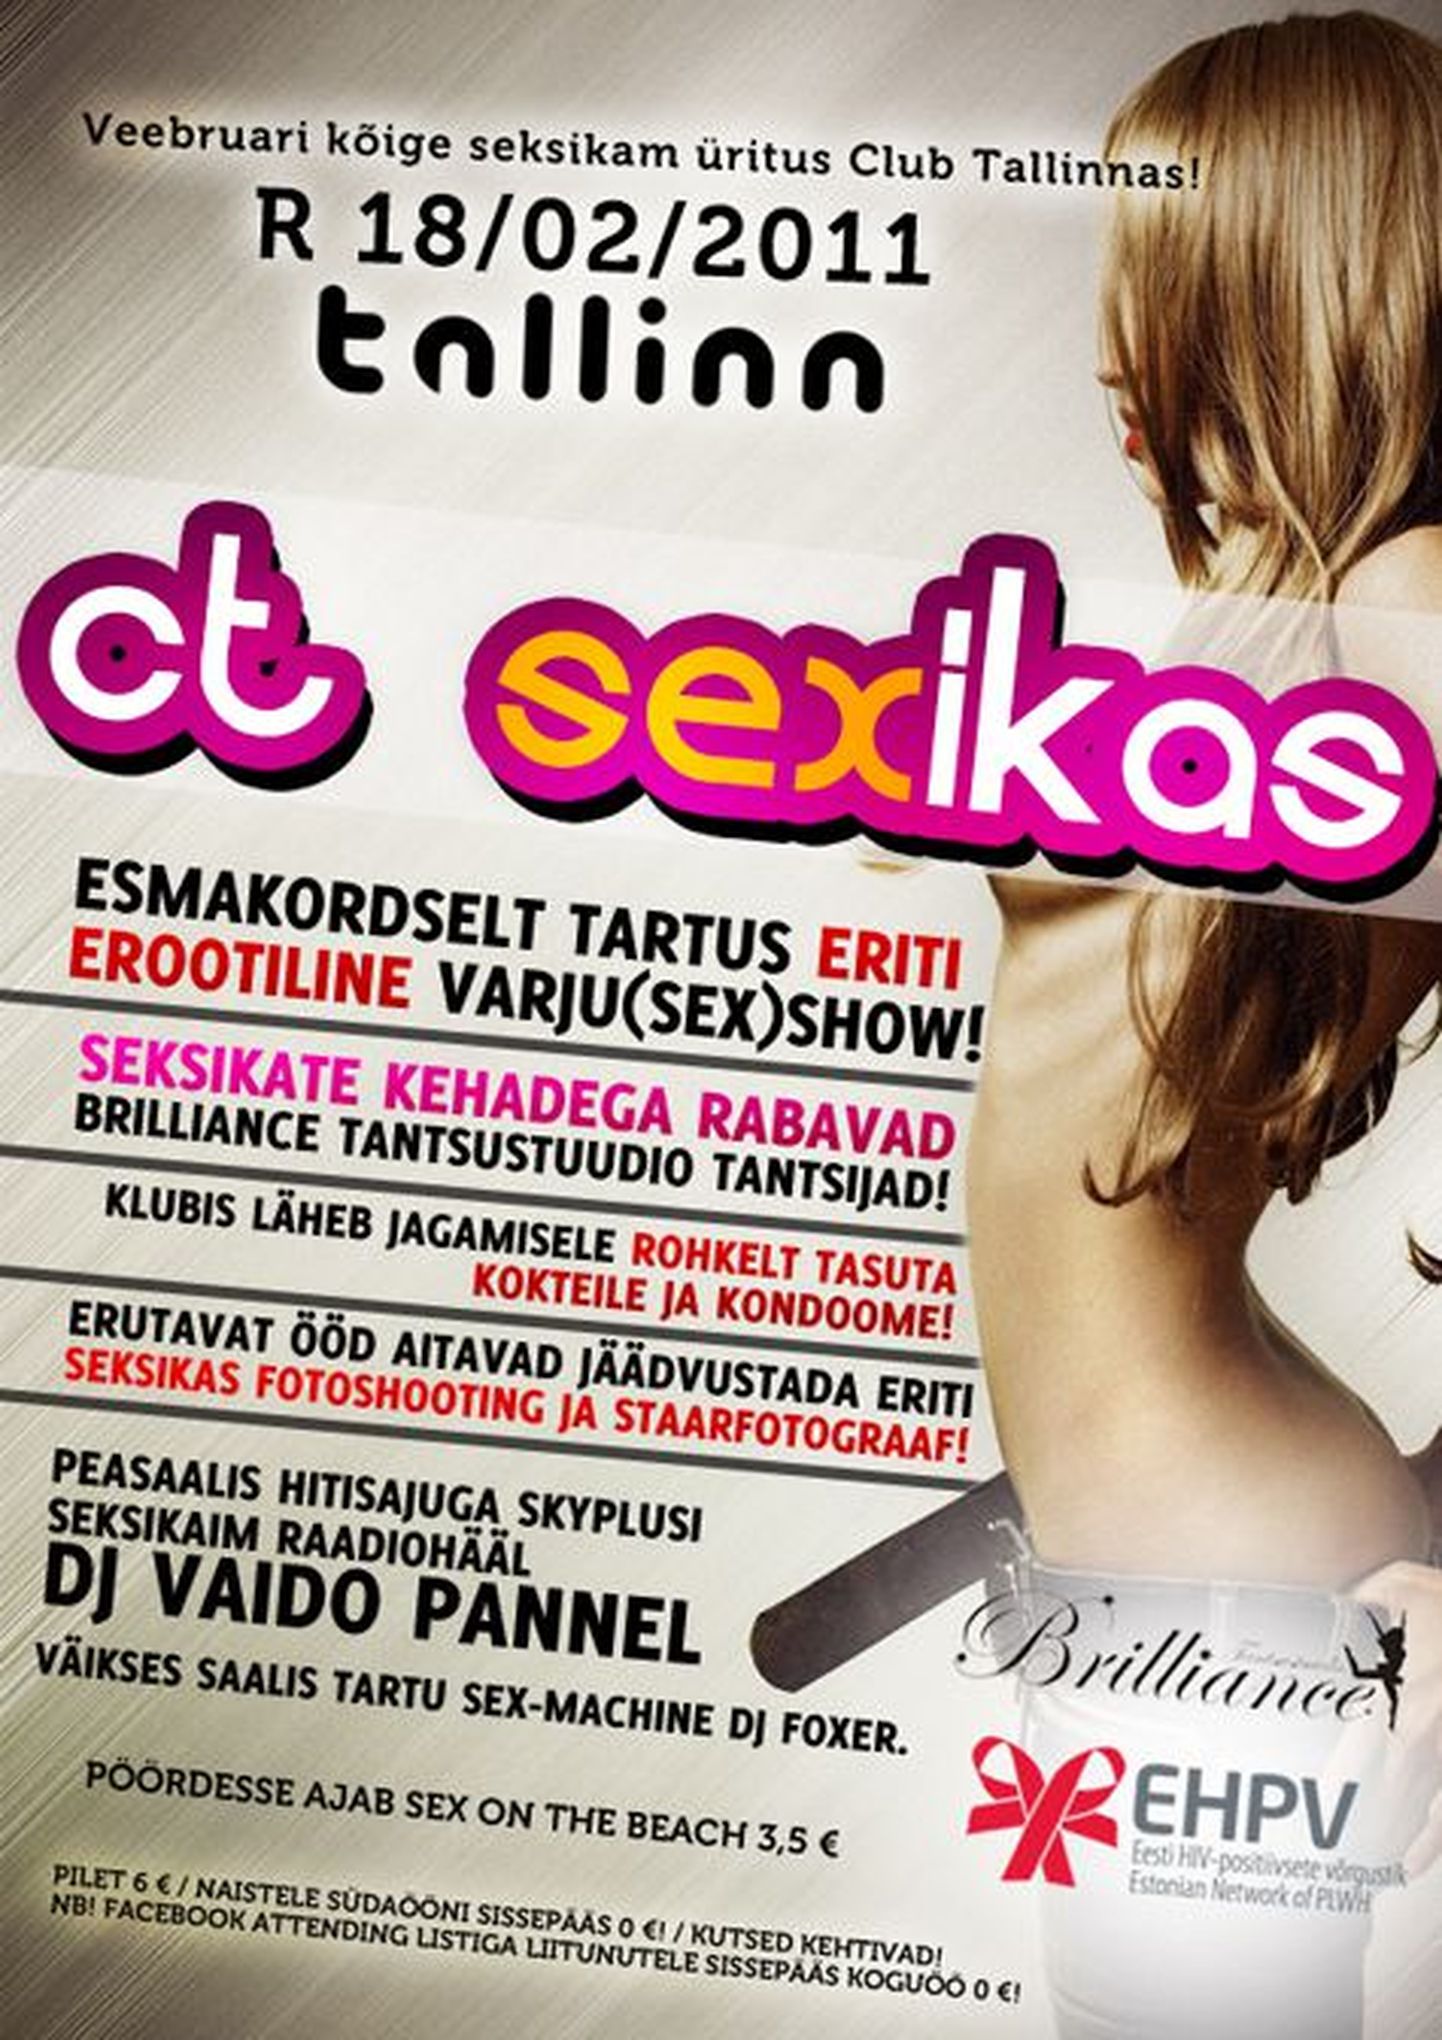 Seks Club Tallinnas!